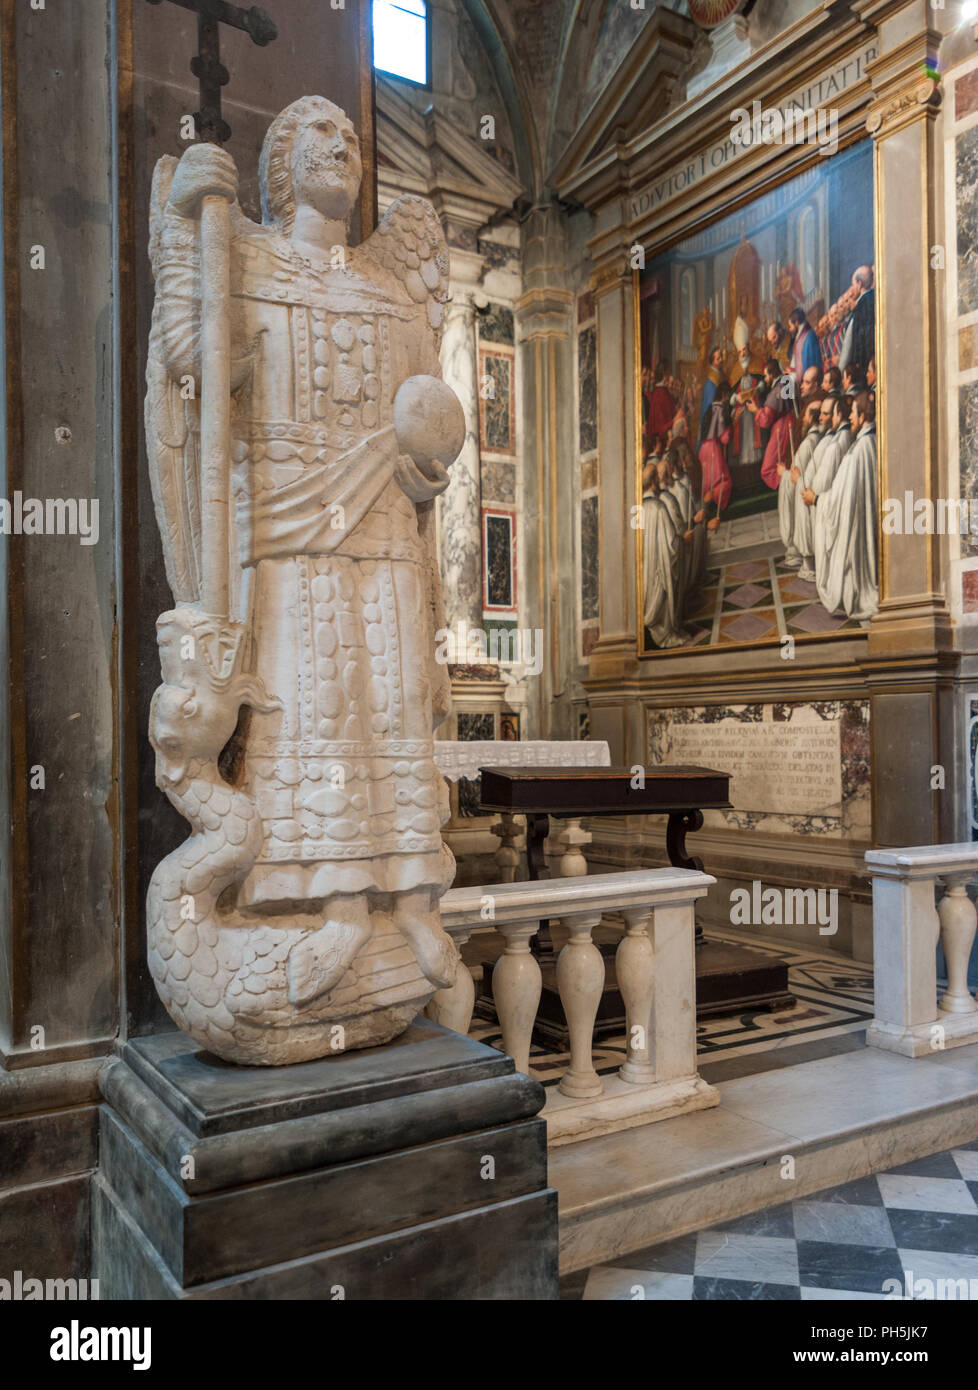 La estatua de San Michele Arcangelo en la histórica abadía de Passignano, en el comune de Tavarnelle Val di Pesa, en la provincia de Florencia, Italia. Foto de stock